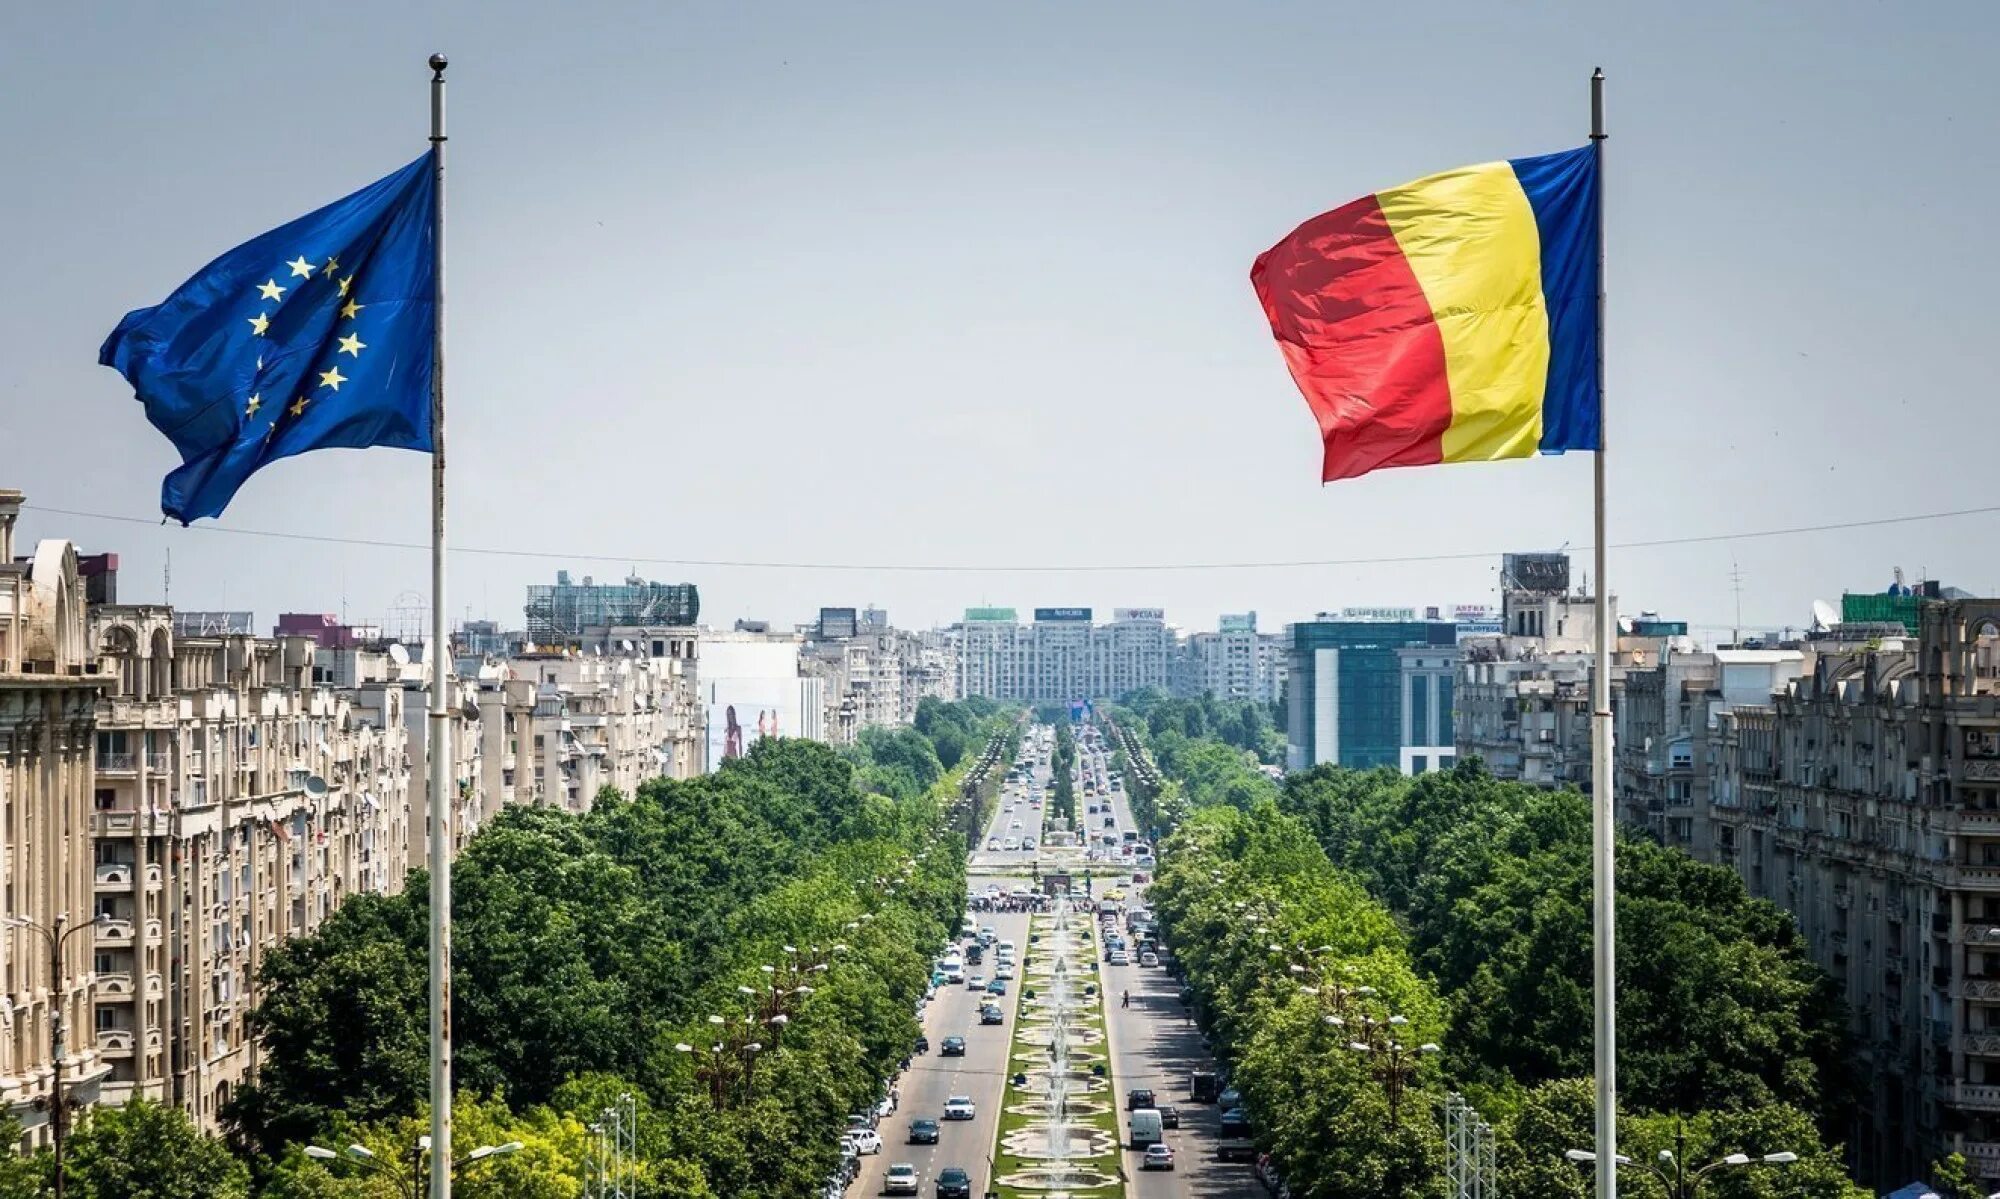 Румыния Бухарест. Румыния Бухарест флаг. Румыния пойтахти. Бухарест столица Румынии флаг.